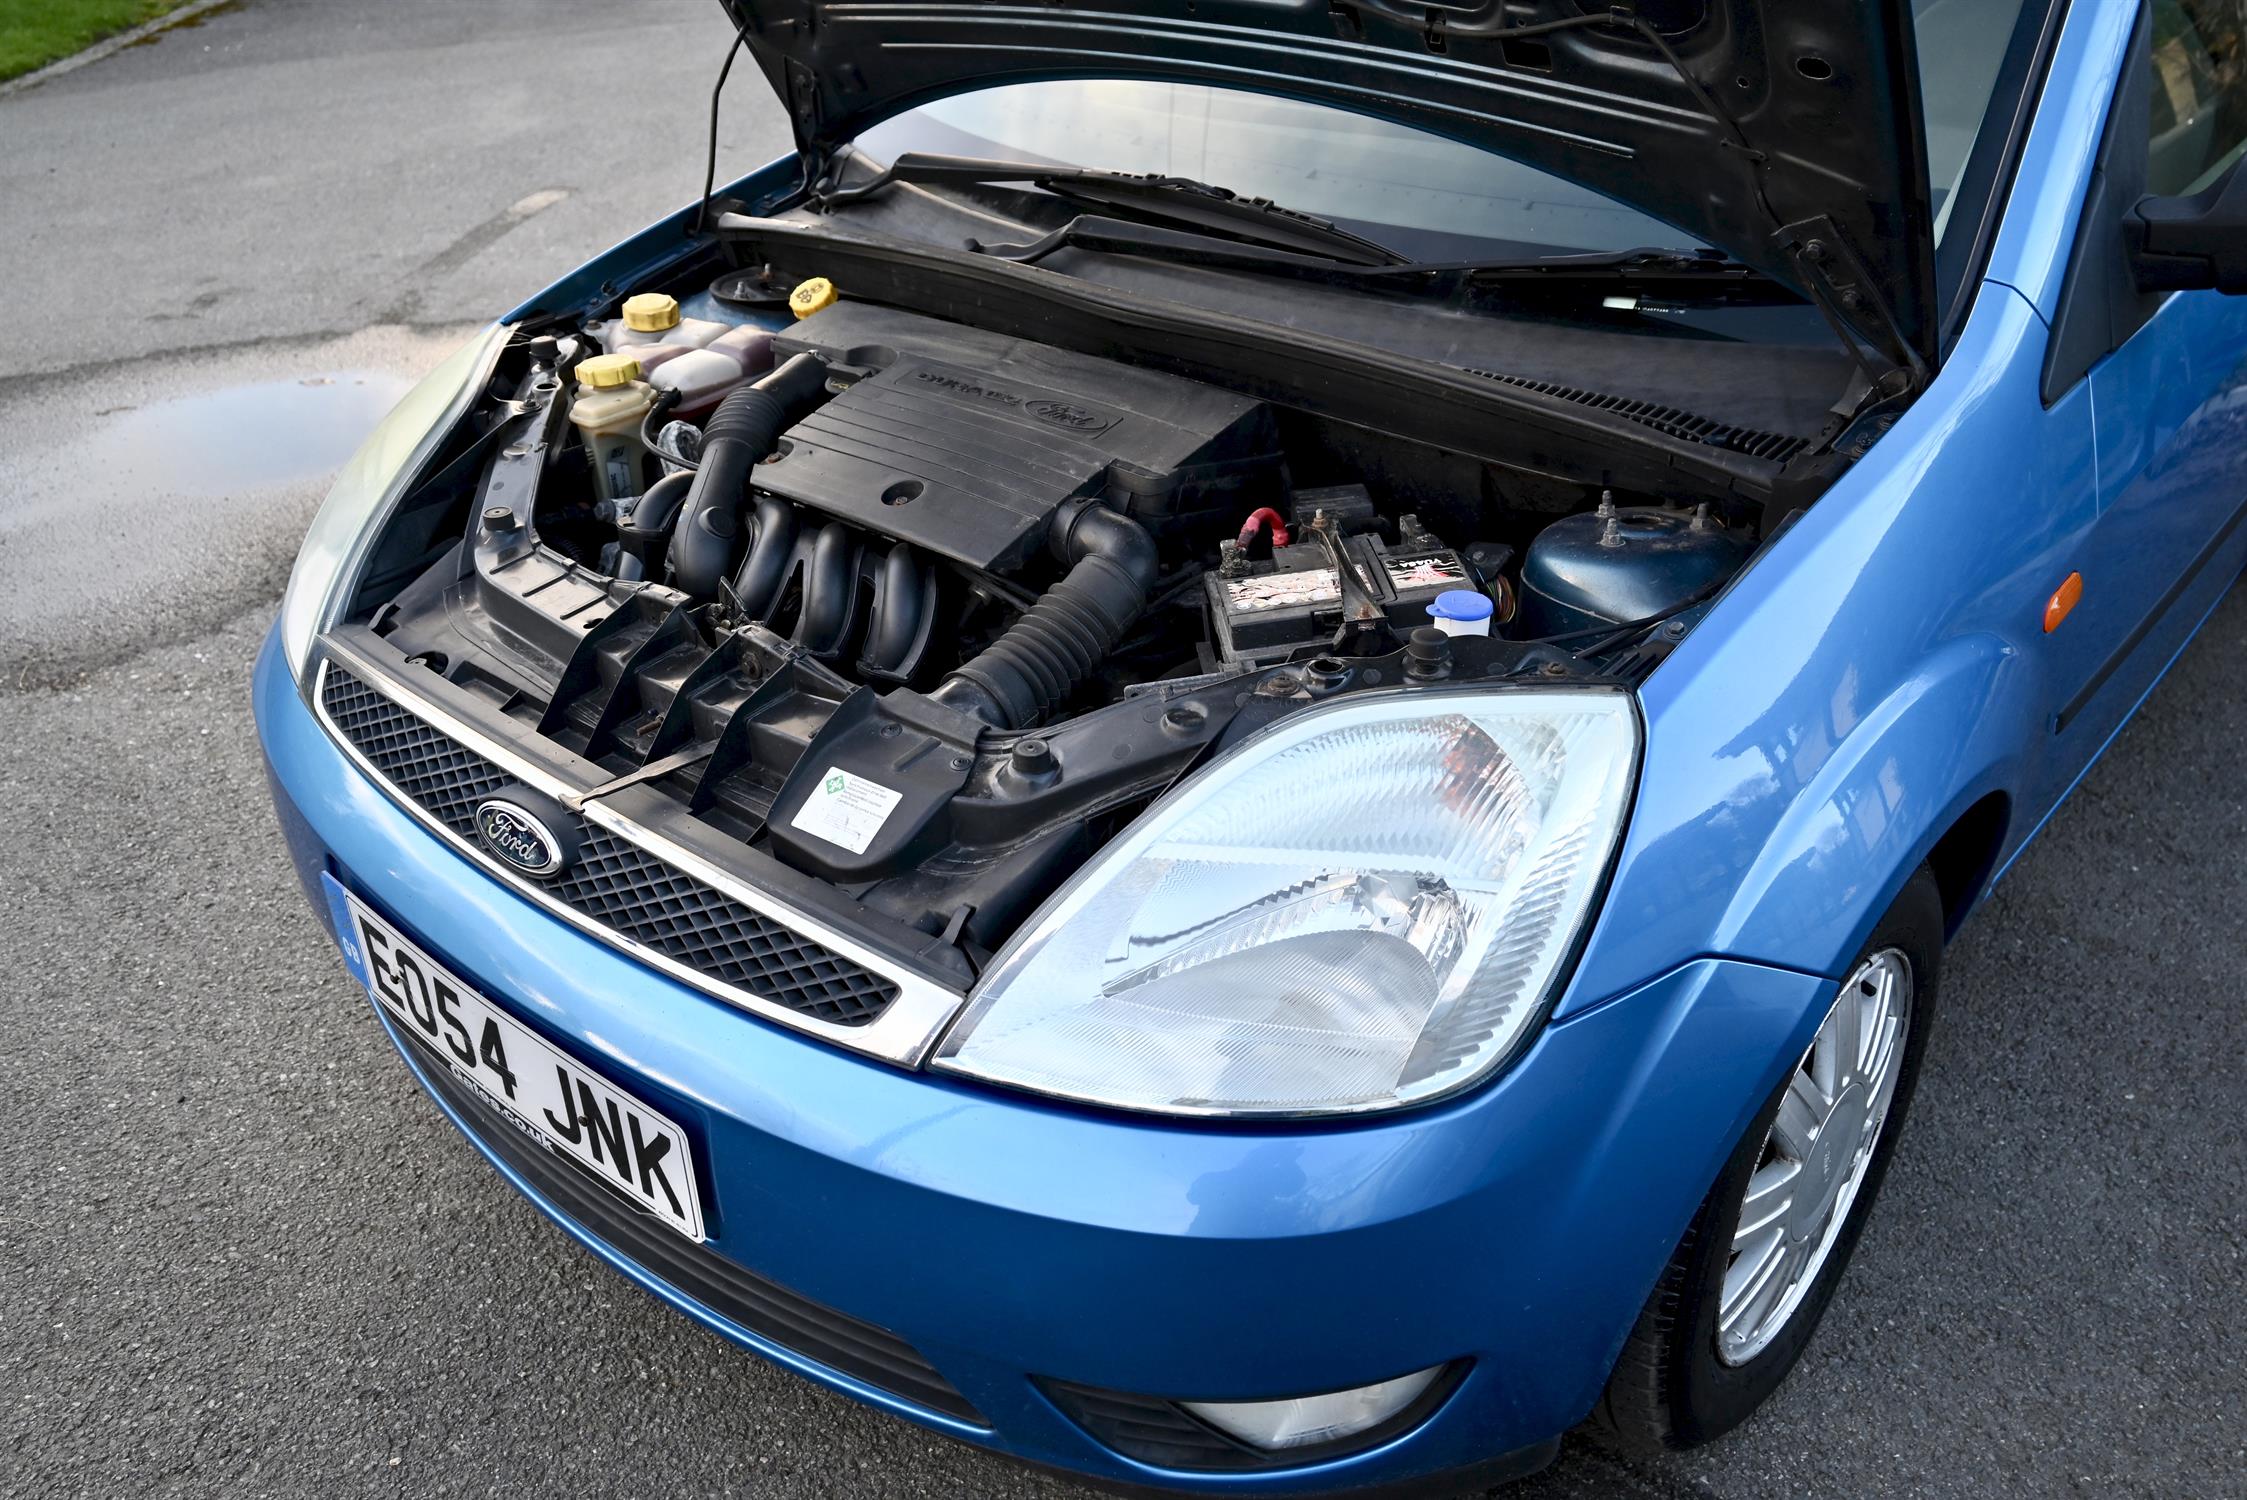 2004 Ford Fiesta 1.4 Ghia 3-door hatchback. Registration number: EO54 JNK. Metallic Aquarius Blue, - Image 6 of 16